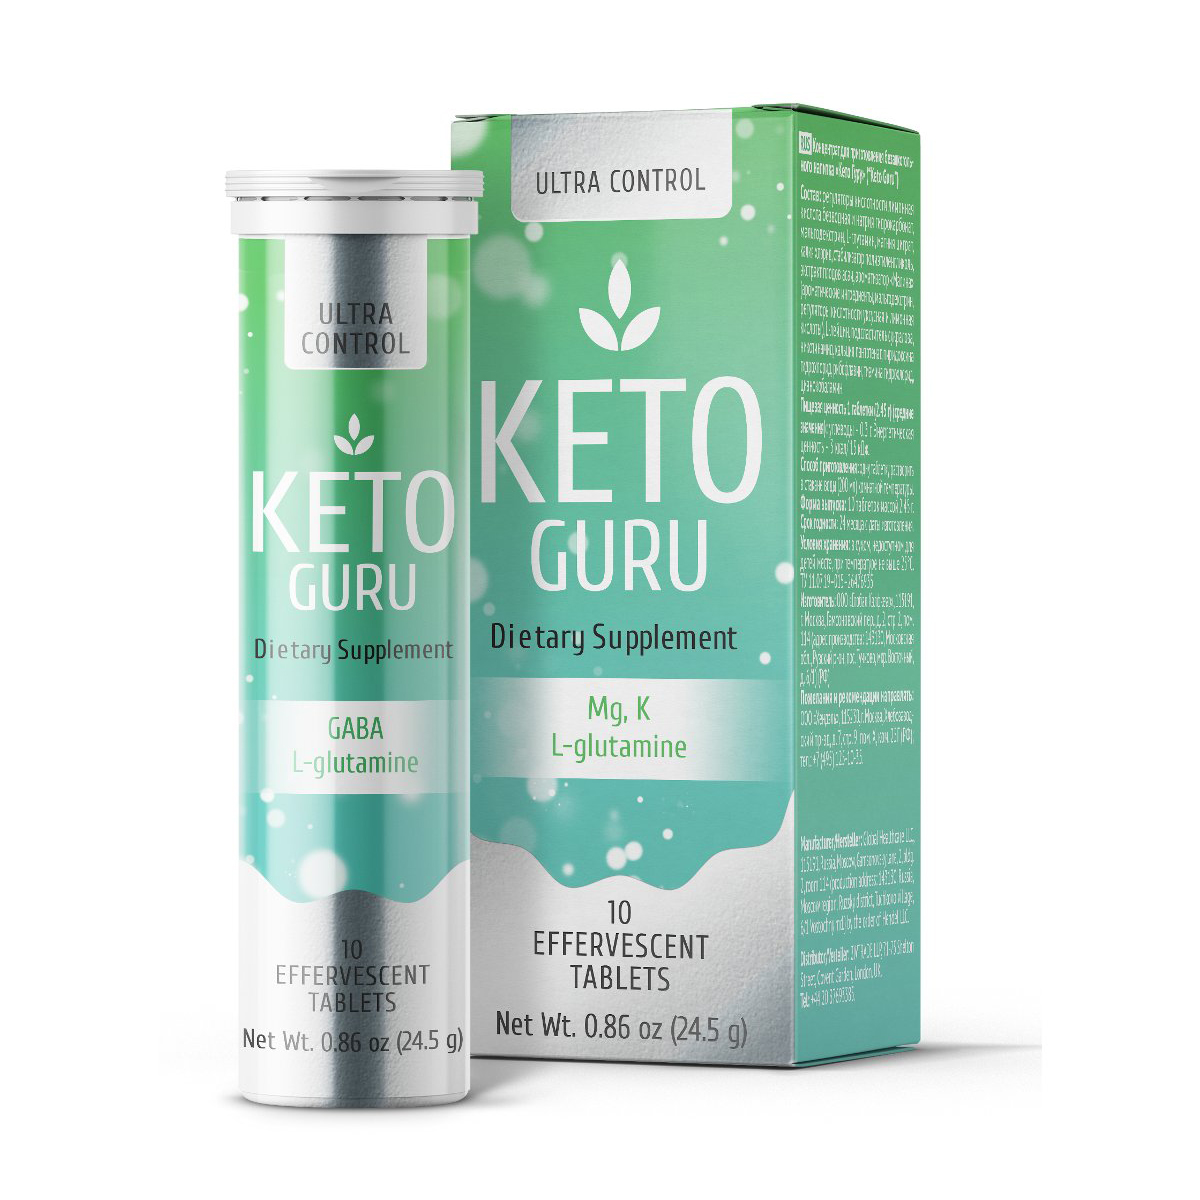 Viên sủi giảm cân Keto Guru được bán với giá niêm yết là 590.000đ